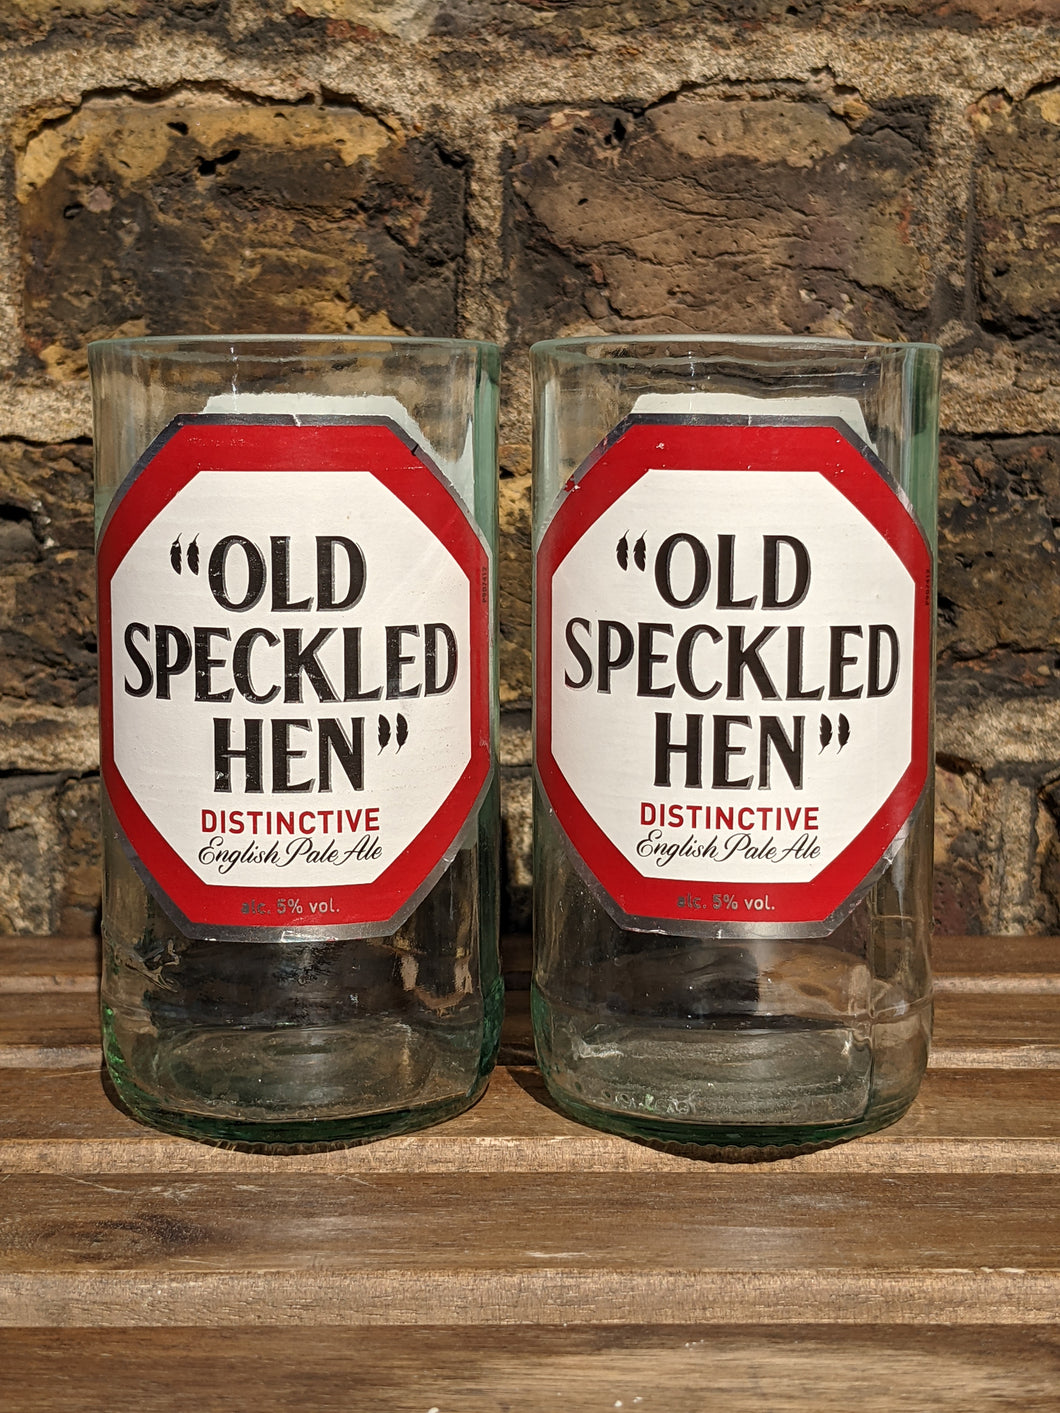 Old Speckled Hen beer bottle glasses